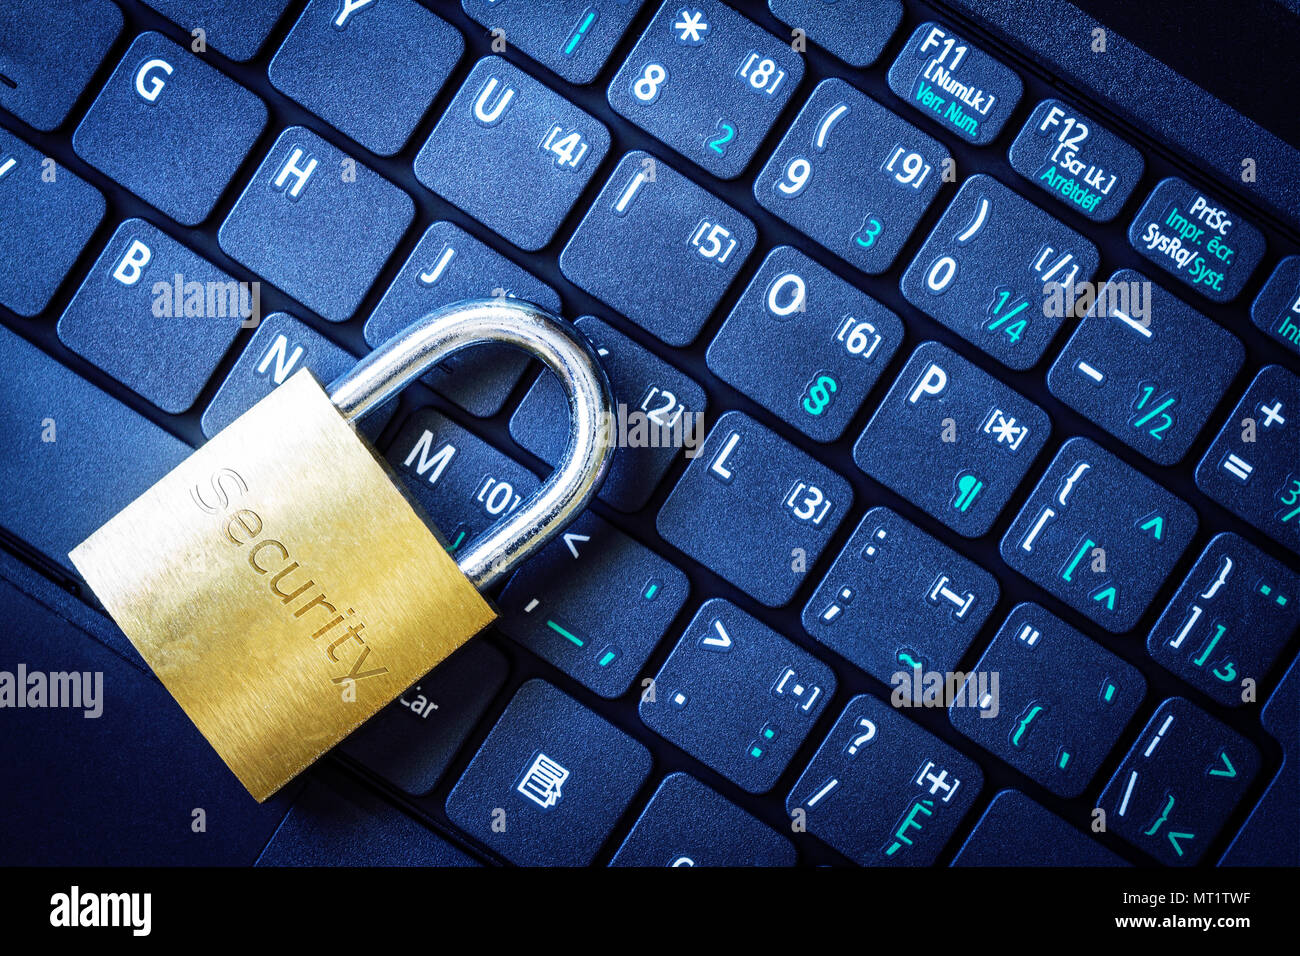 Goldene Vorhängeschloss auf dem Computer Laptop Tastatur mit Sicherheit Wort eingraviert. Konzept der Internet Security, Datenschutz, Computerkriminalität Verhinderung. Stockfoto